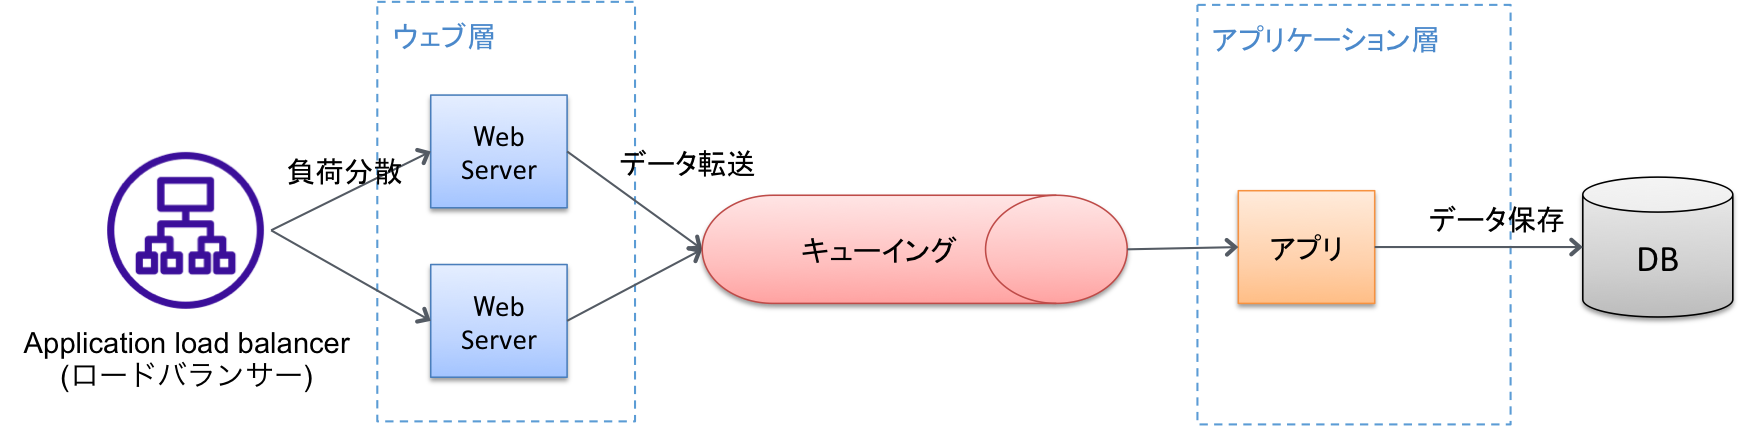 疎結合なシステム(マイクロサービス)の構成図